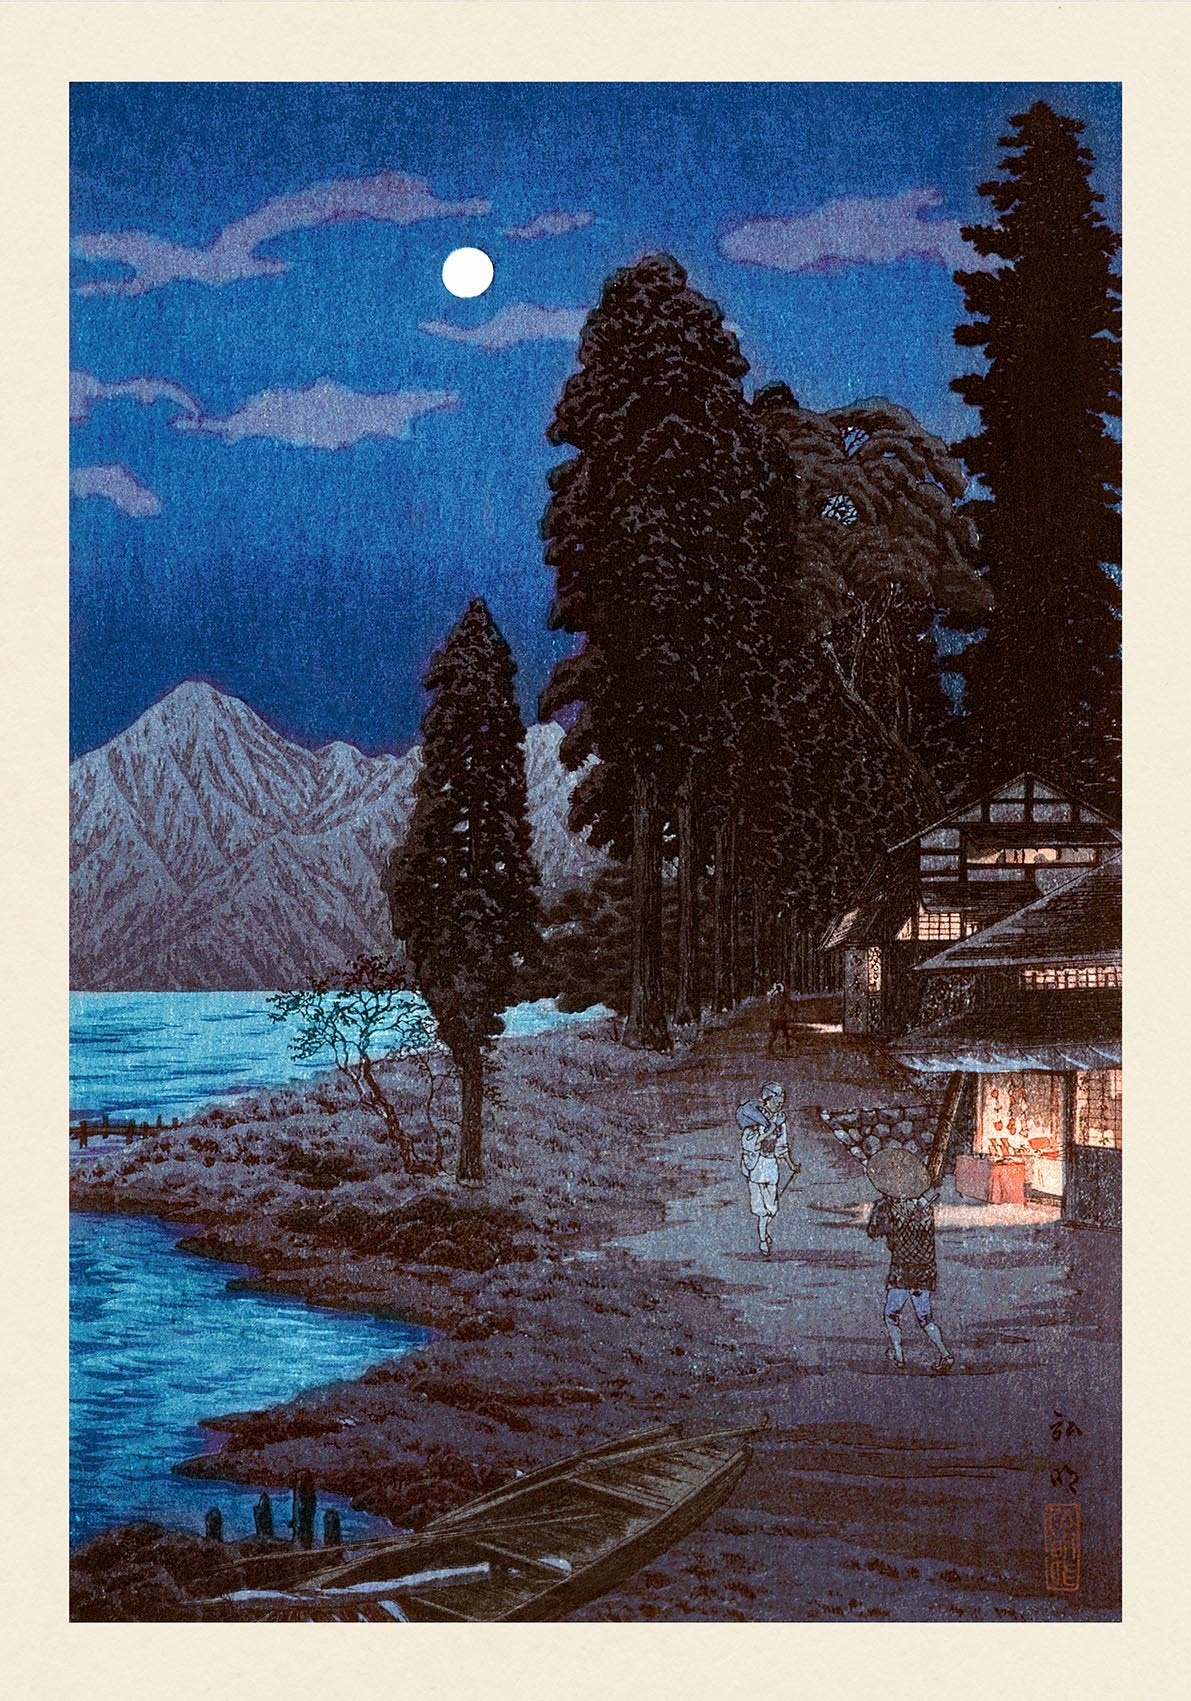 Lake Chuzenji by Takahashi Shōtei